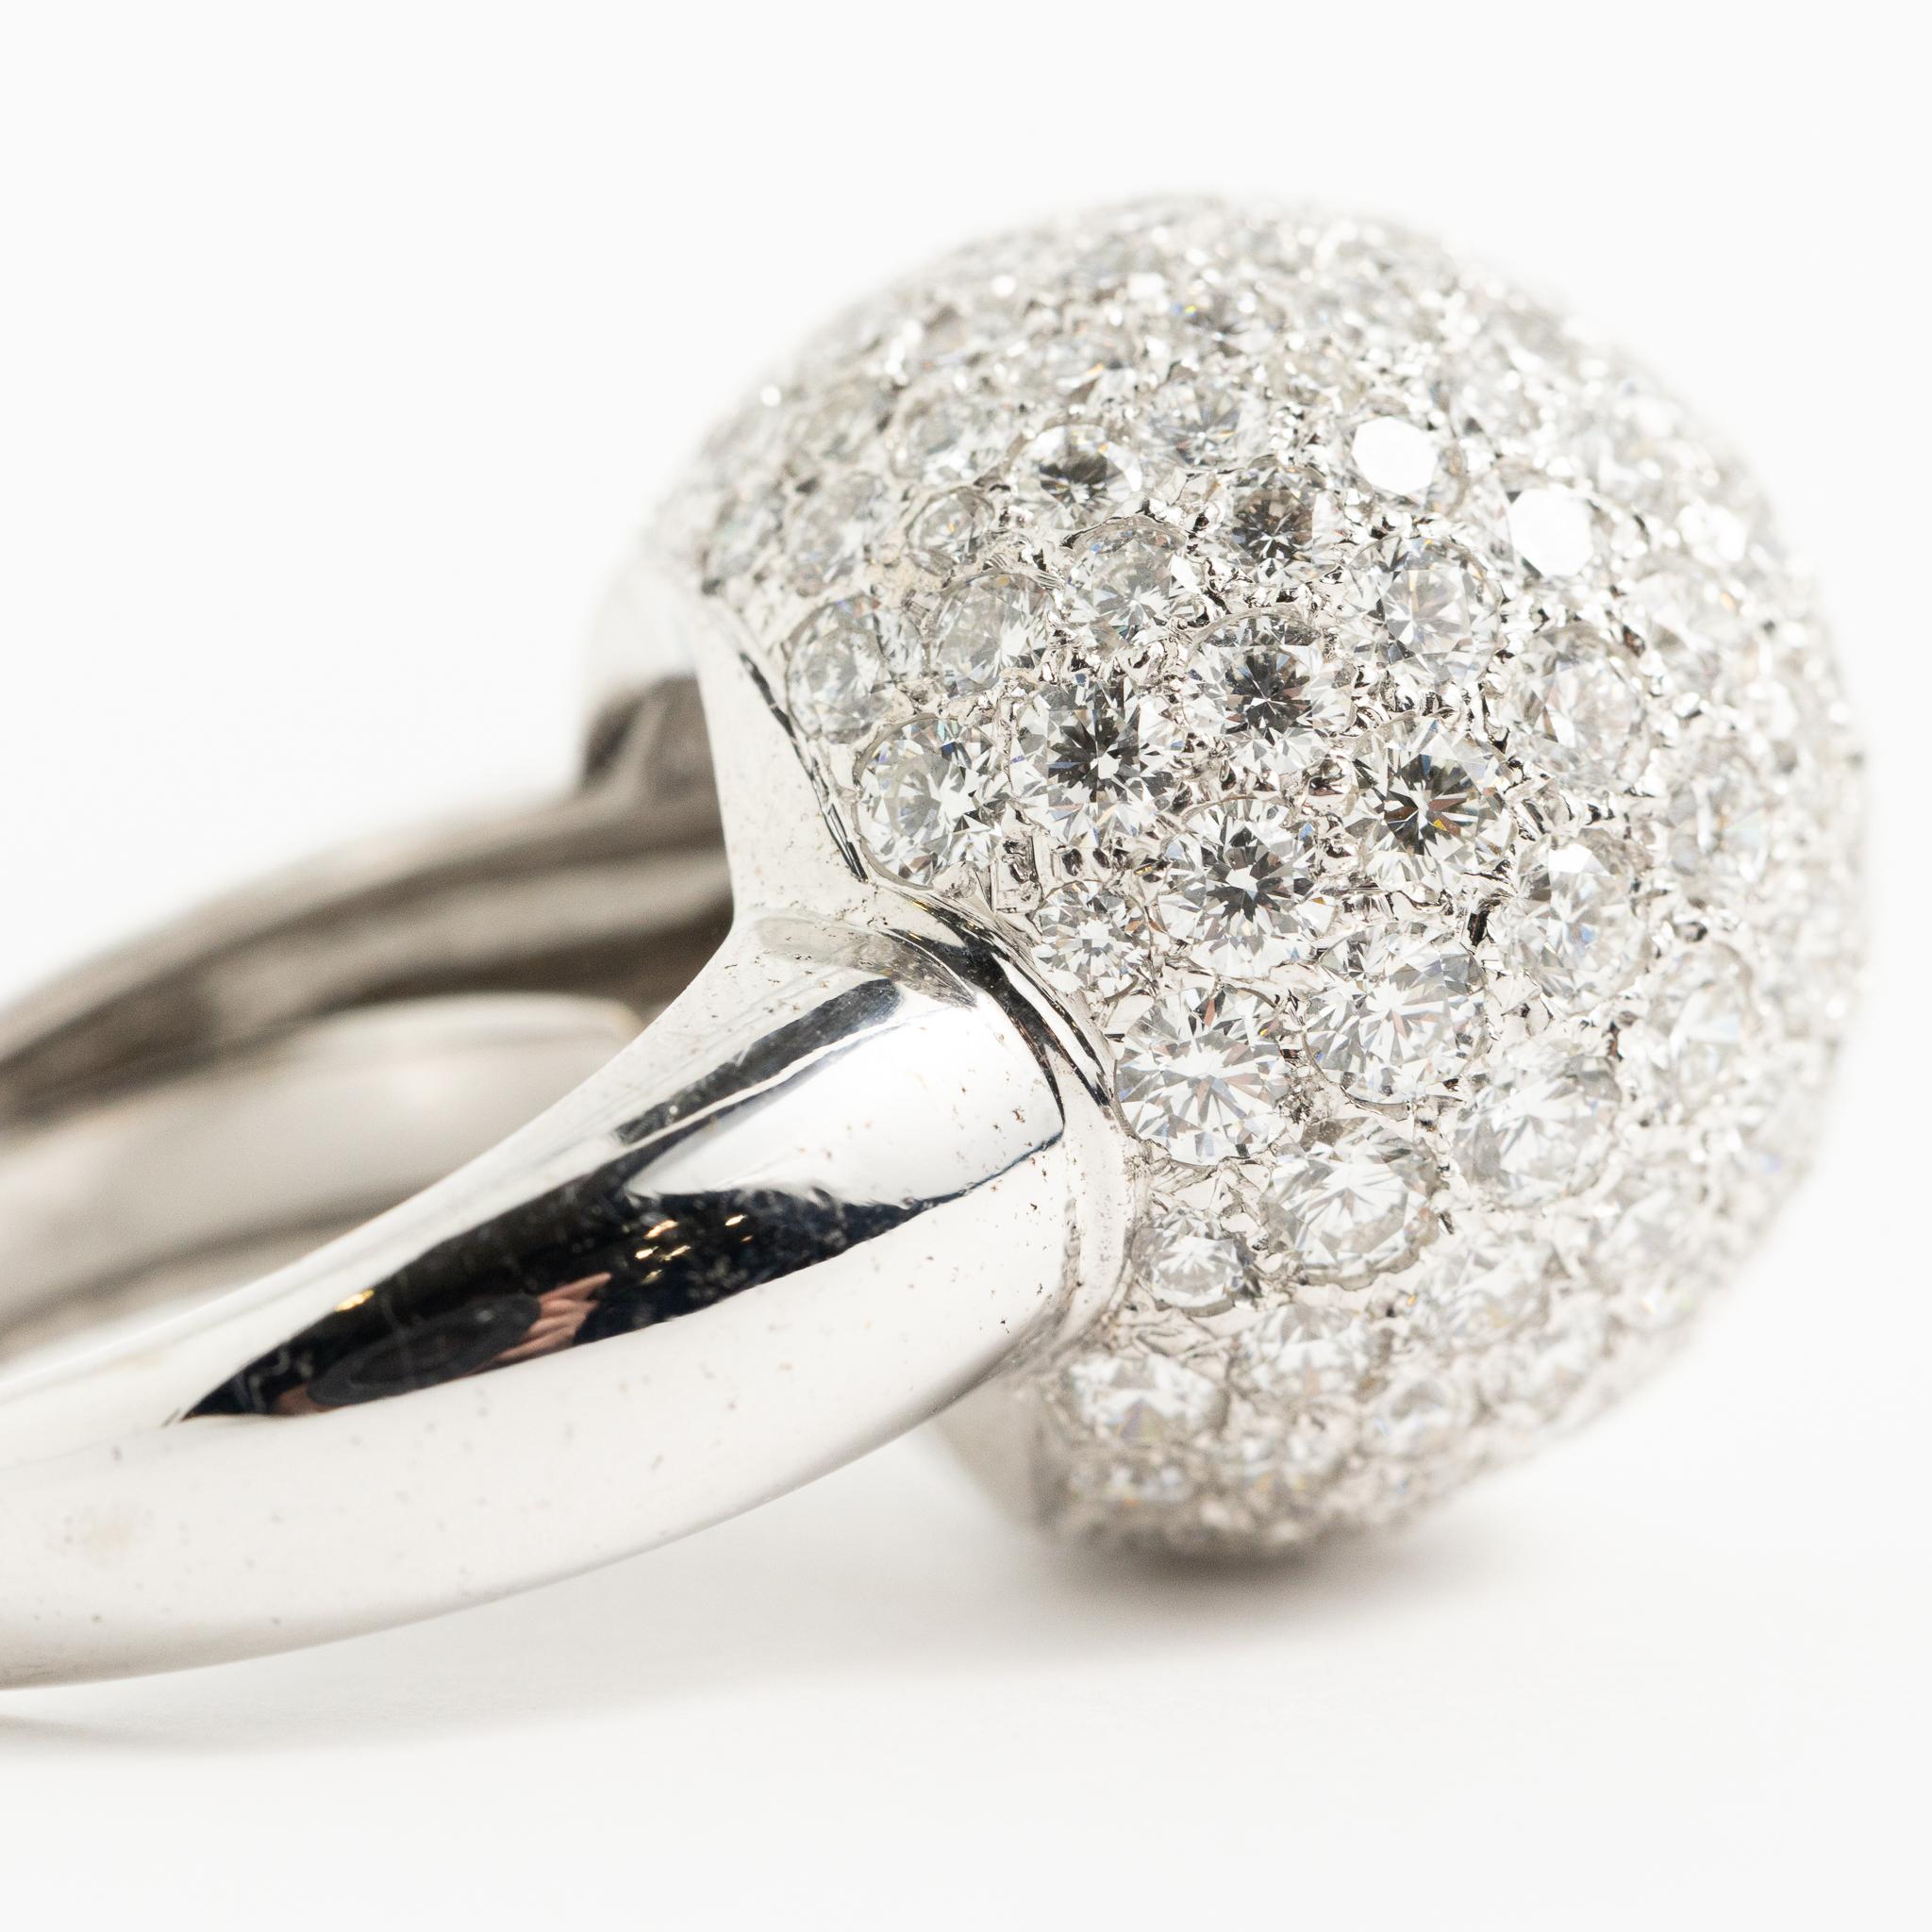 Anello realizzato a mano in Italia in oro bianco 18 kt. con diamanti taglio brillante.
Questo anello fa parte della Collezione Diamond Fraleoni.
La parte superiore dell'anello è disegnata come una boulle ricoperta di diamanti con incastonatura